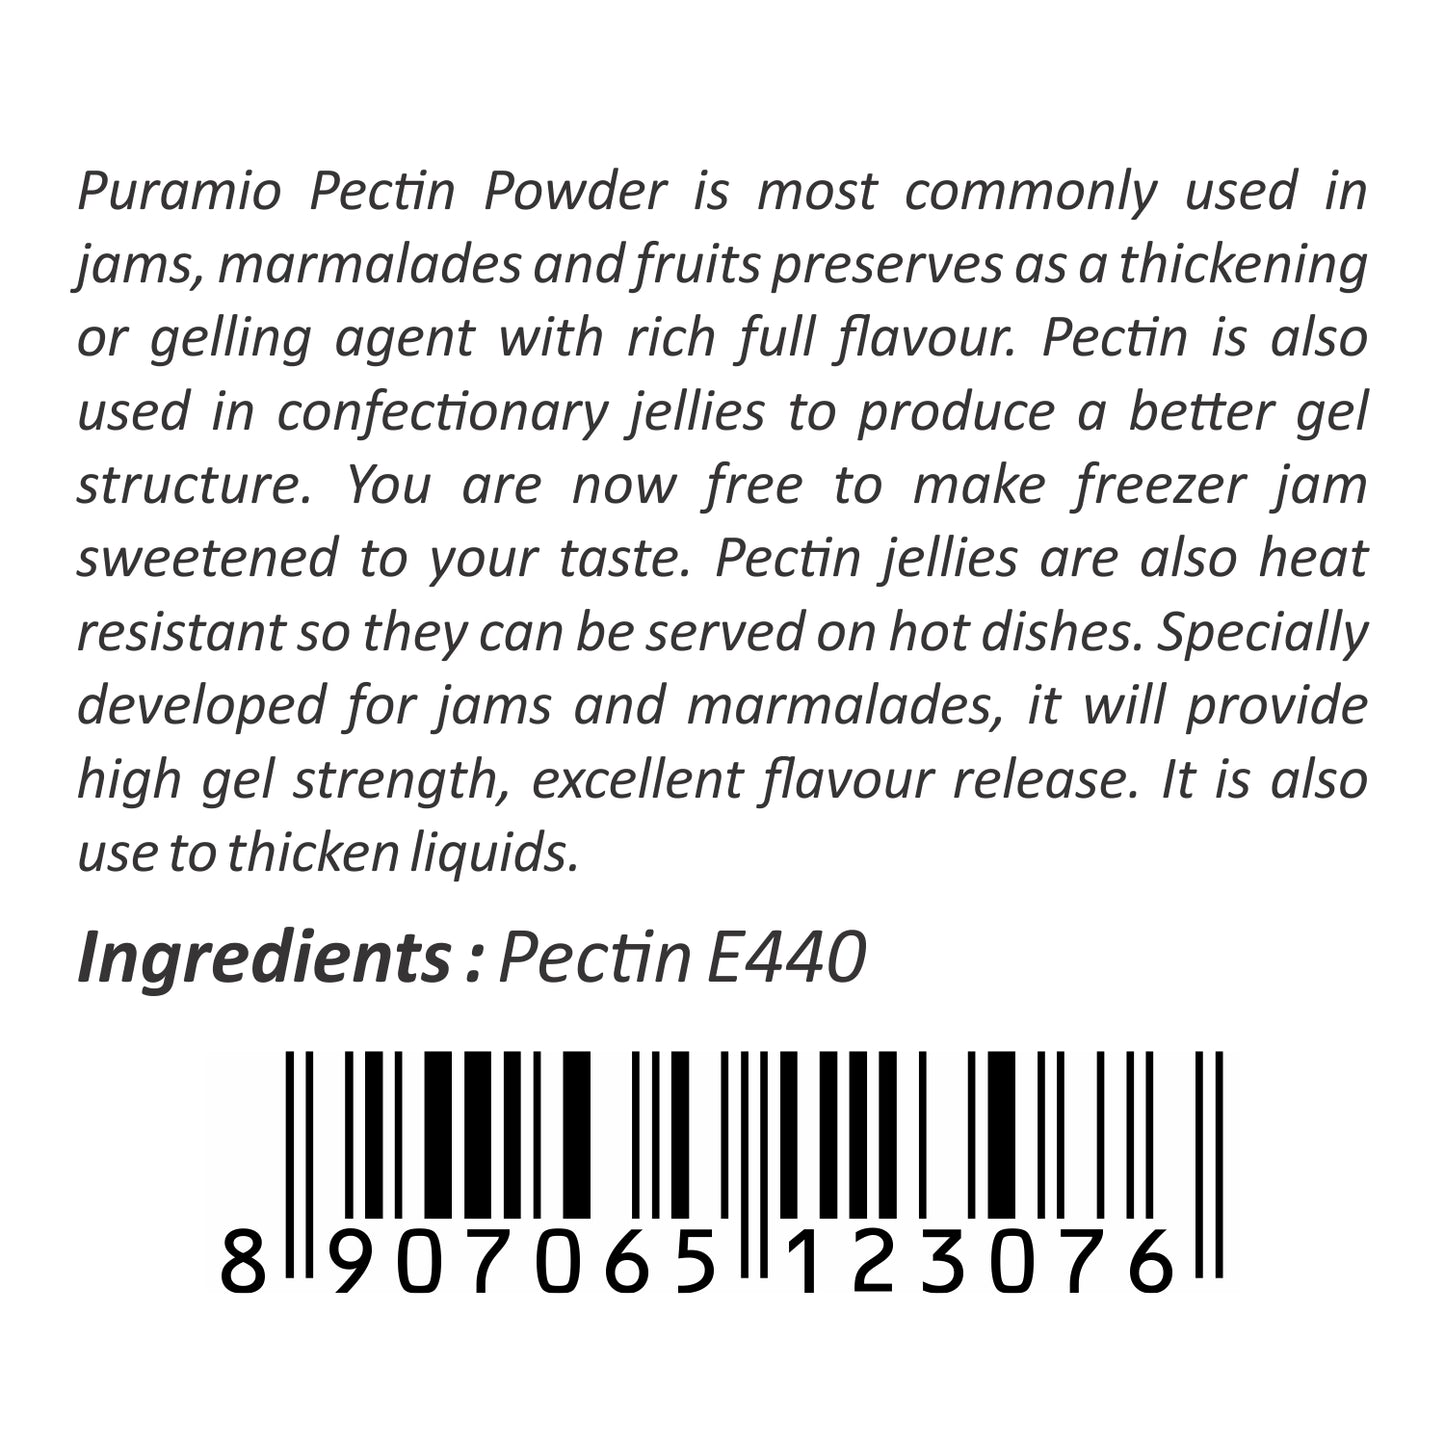 Puramio Pectin Powder